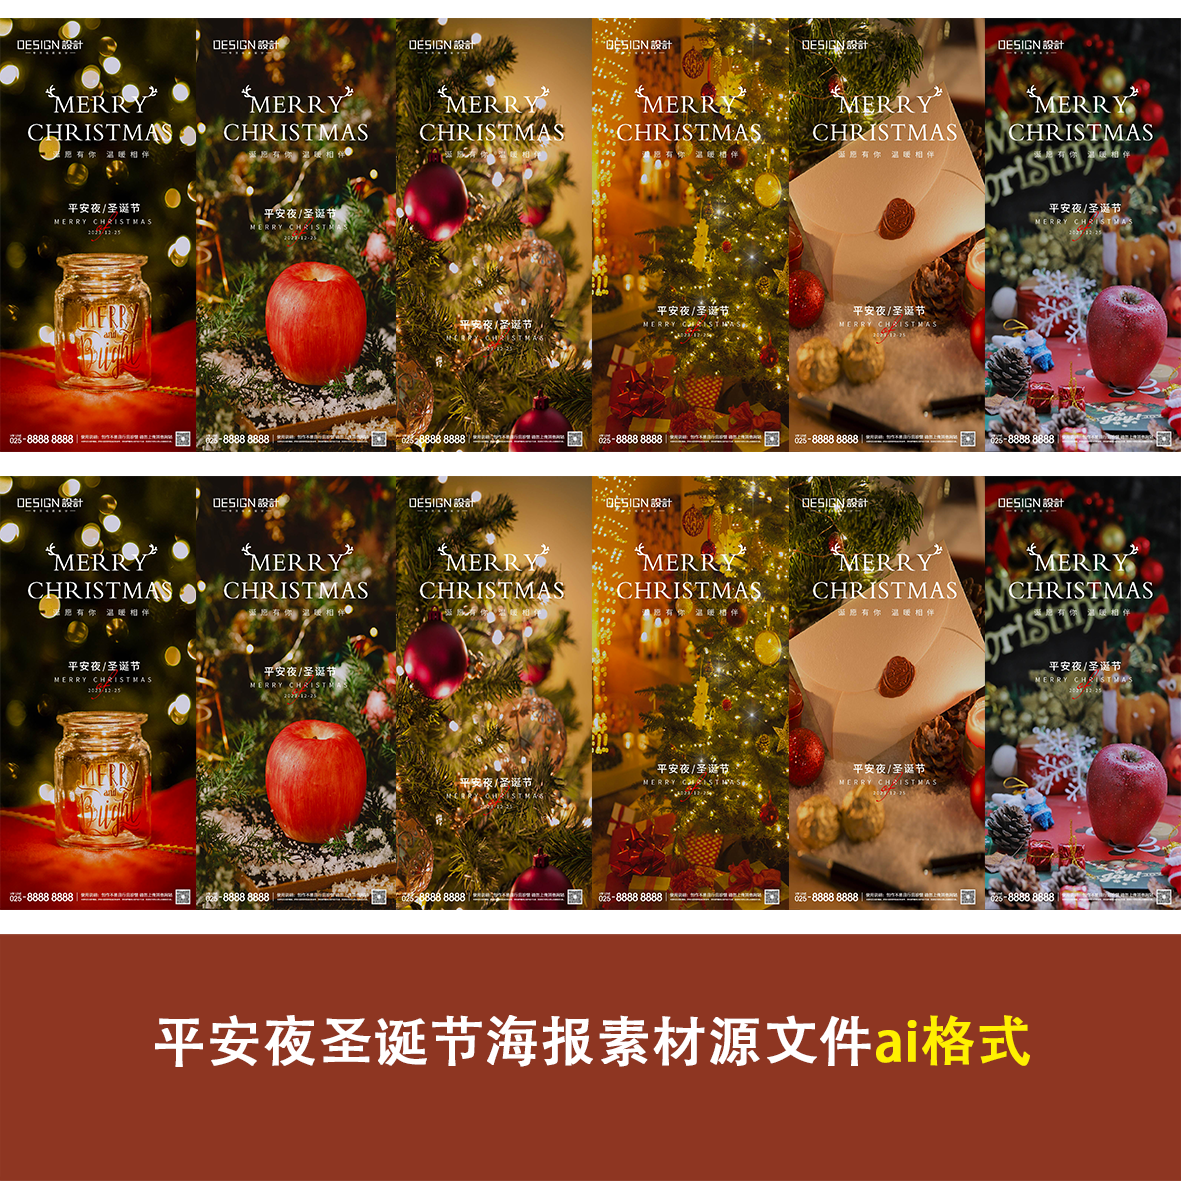 平安夜圣诞节海报素材源文件ai格式苹果圣诞树灯光朋友圈企业宣传